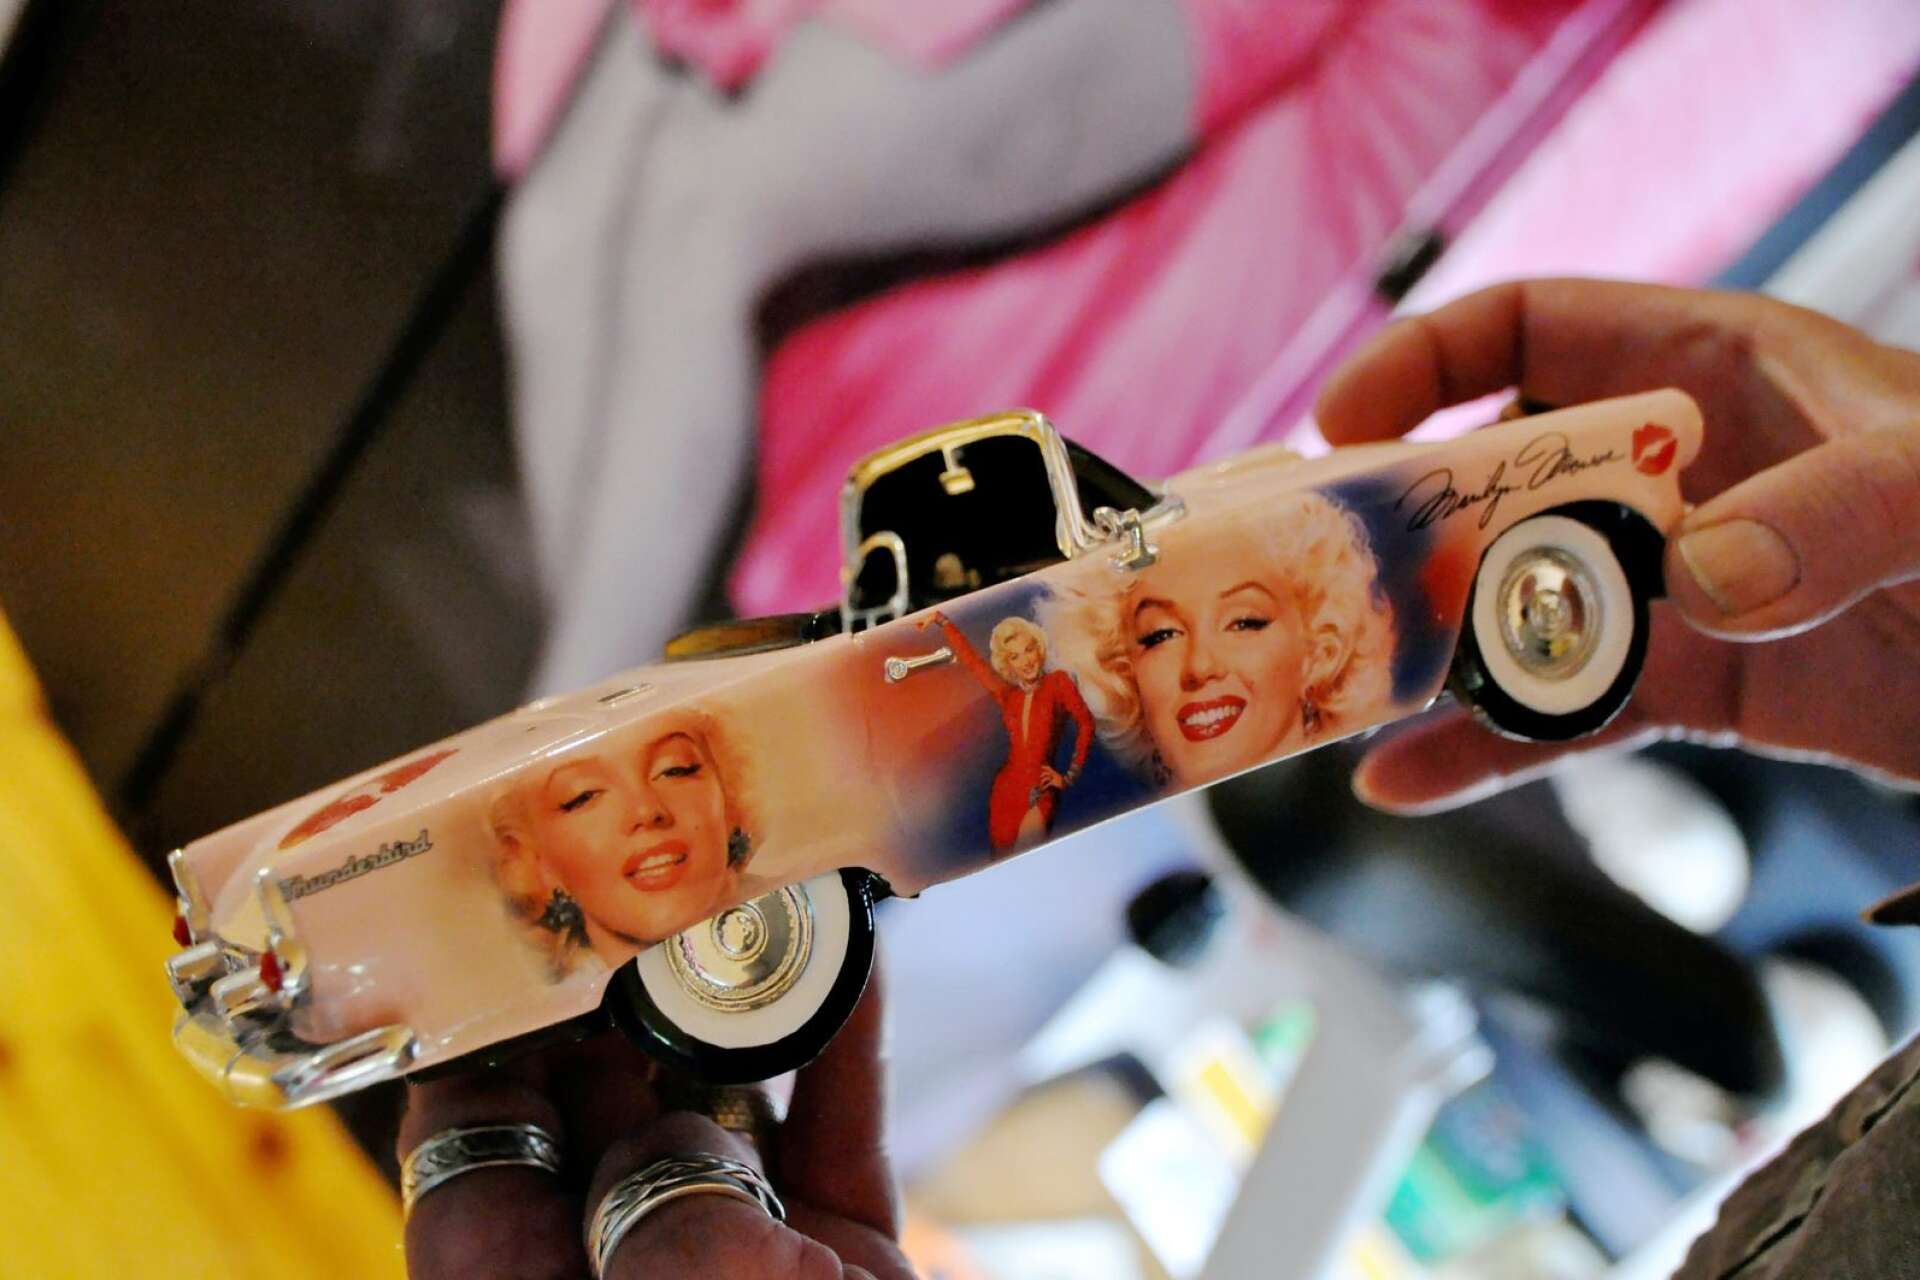 Även bilmodeller med Marilyn Monroe-motiv ingår i samlingarna.